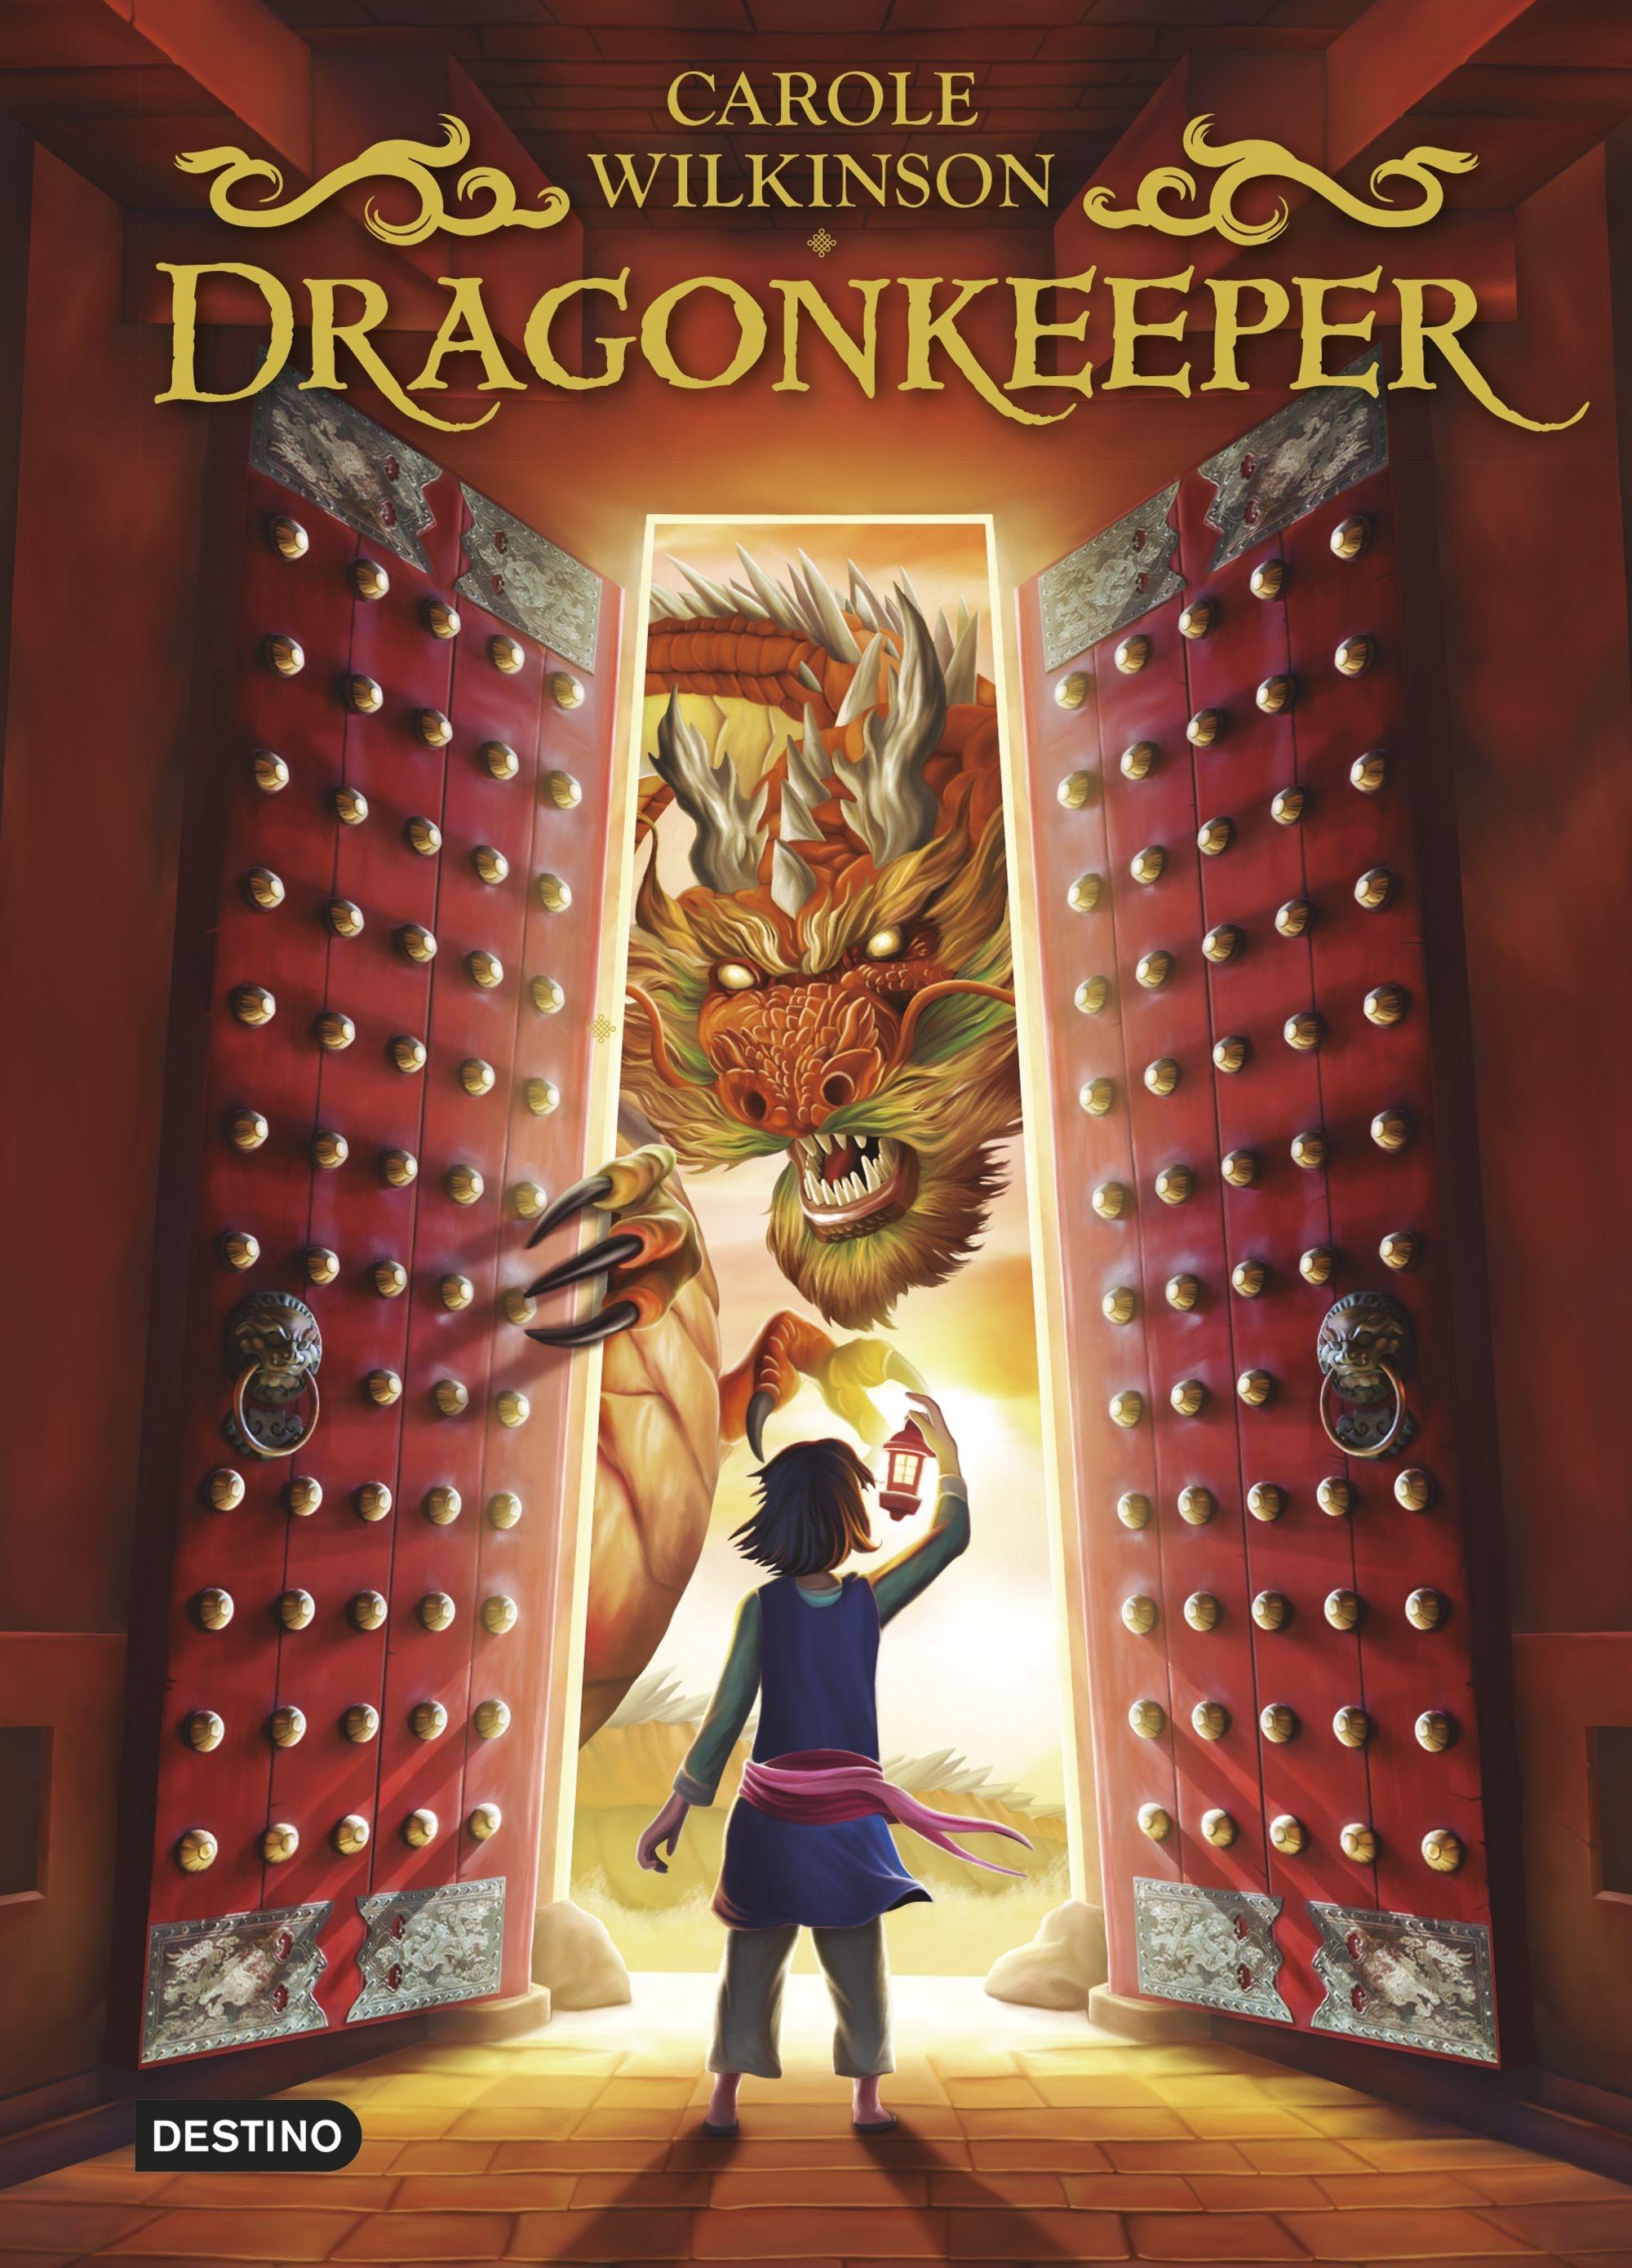 Dragonkeeper (Guardiana de Dragones) "El Libro en el que se Basa la Película Guardiana de Dragones". 